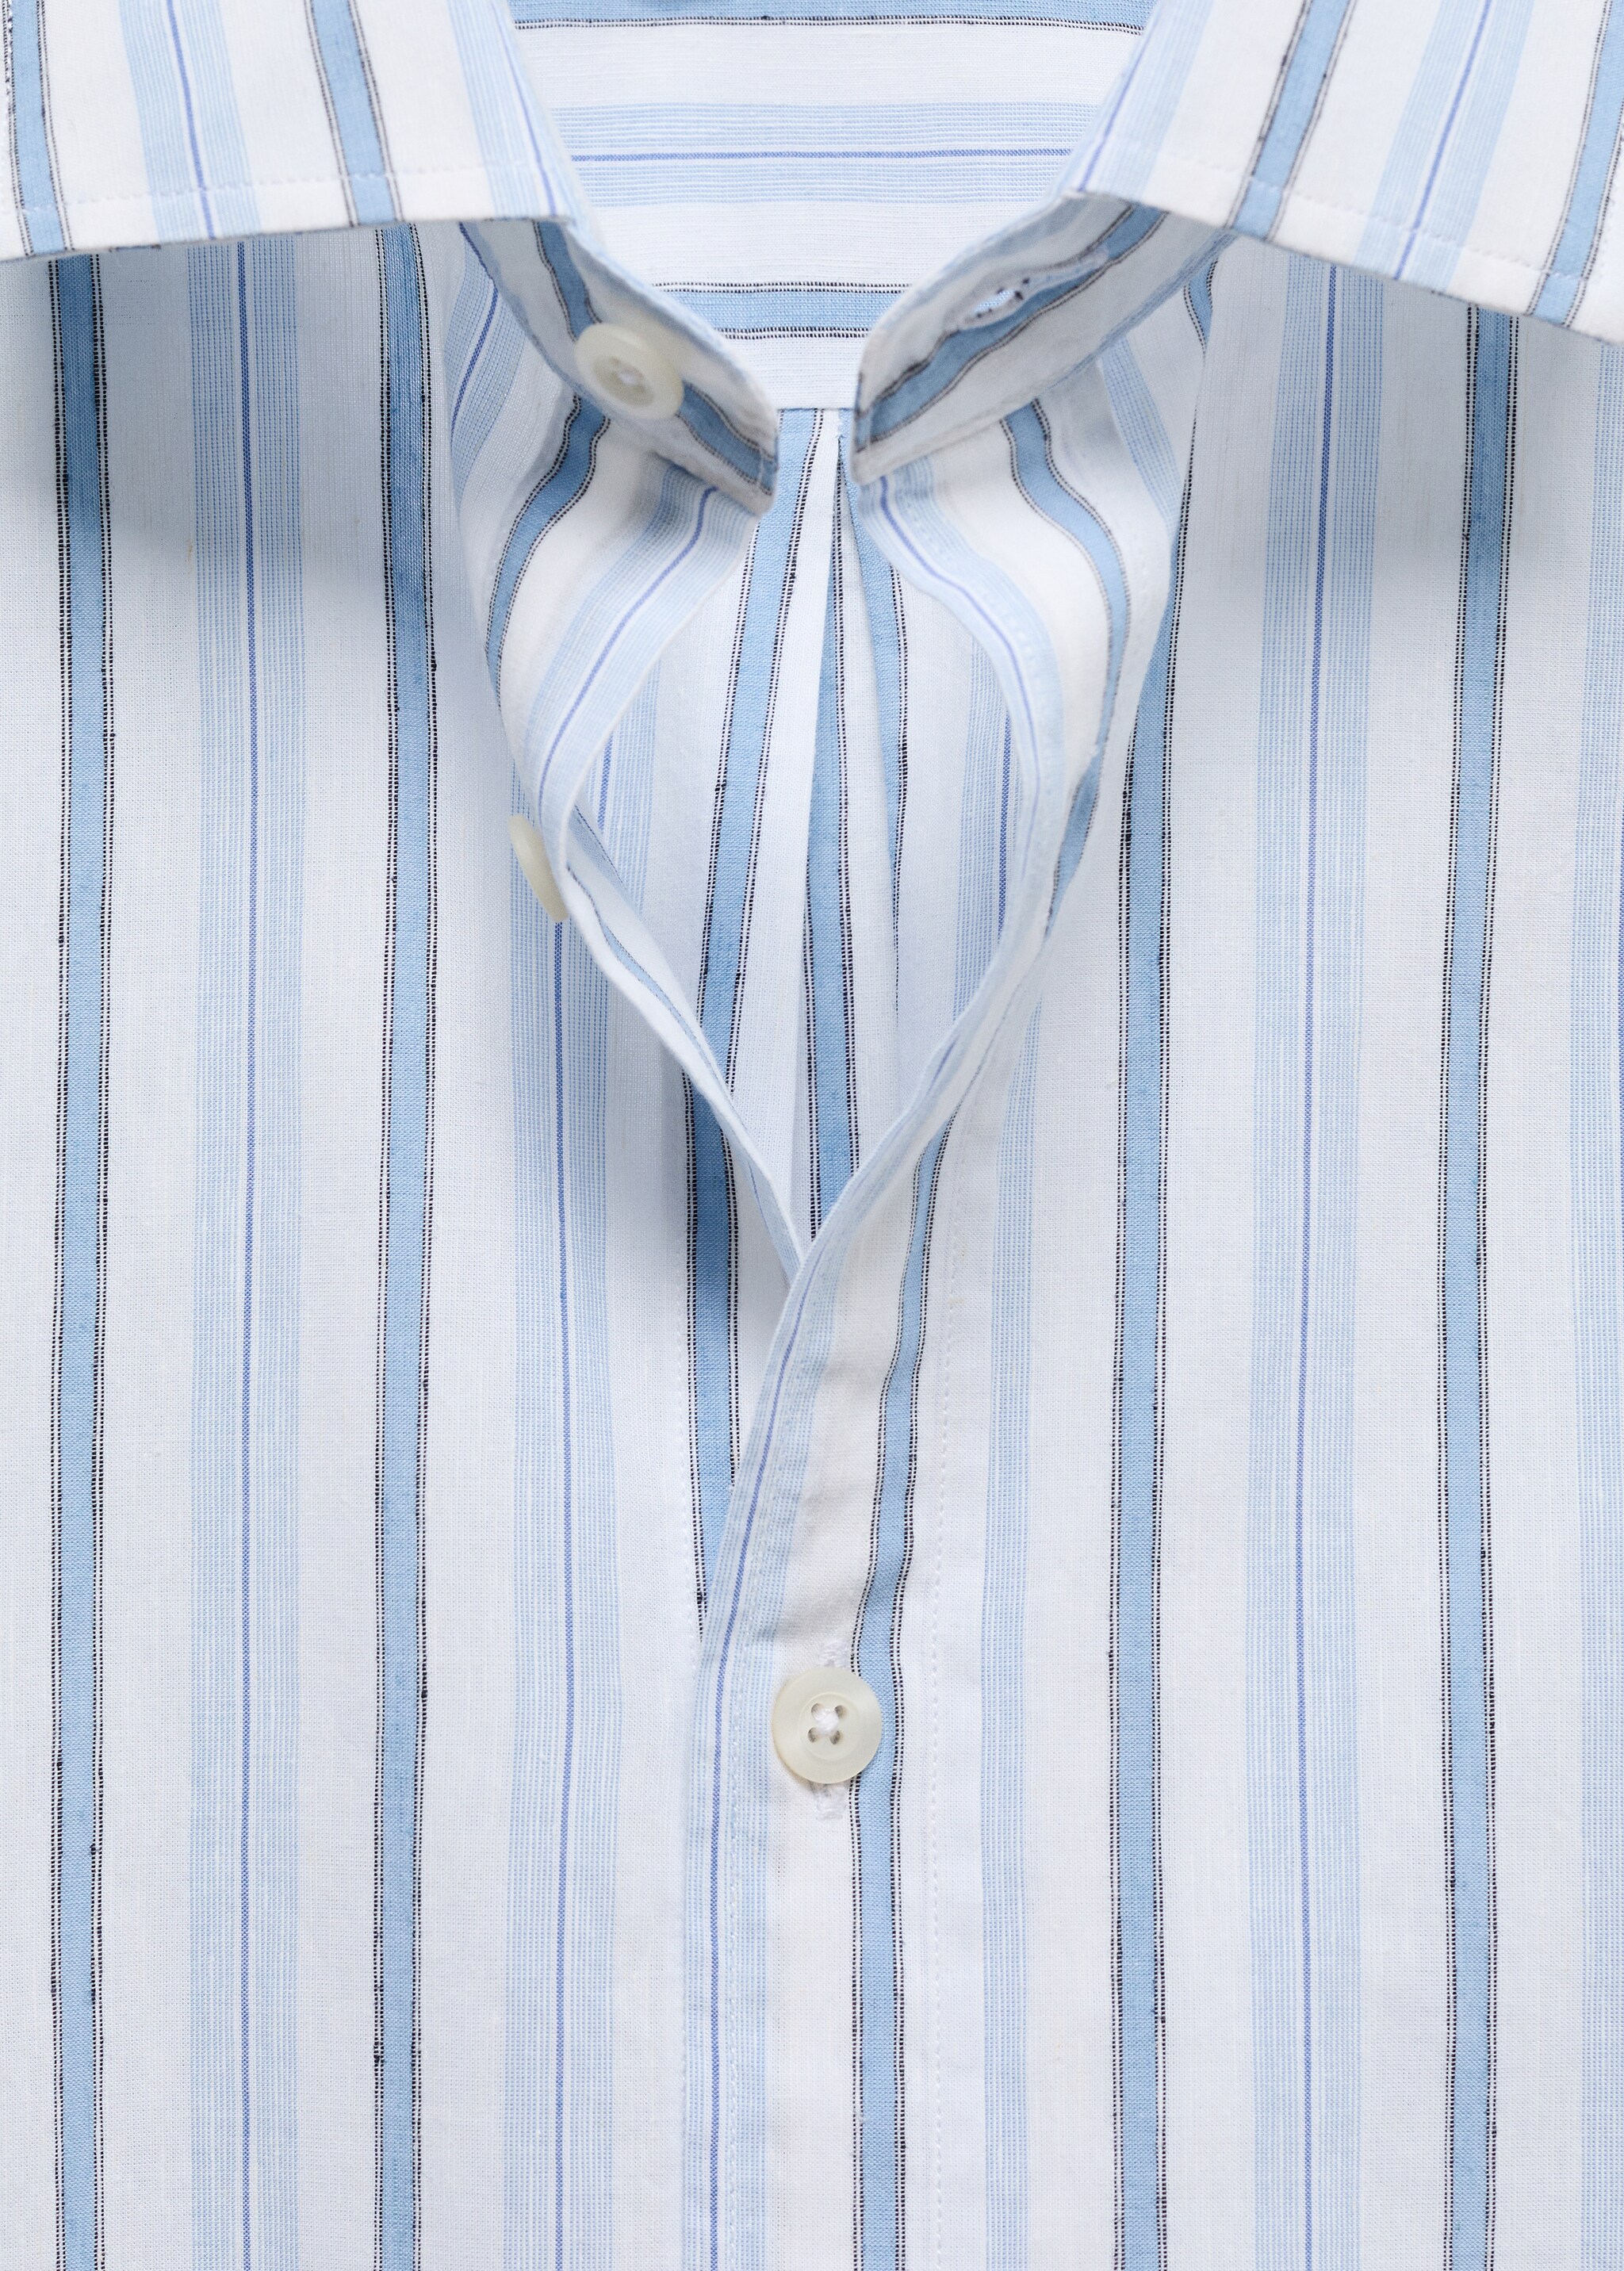 Camisa classic fit algodón lino rayas rústico - Detalle del artículo 8